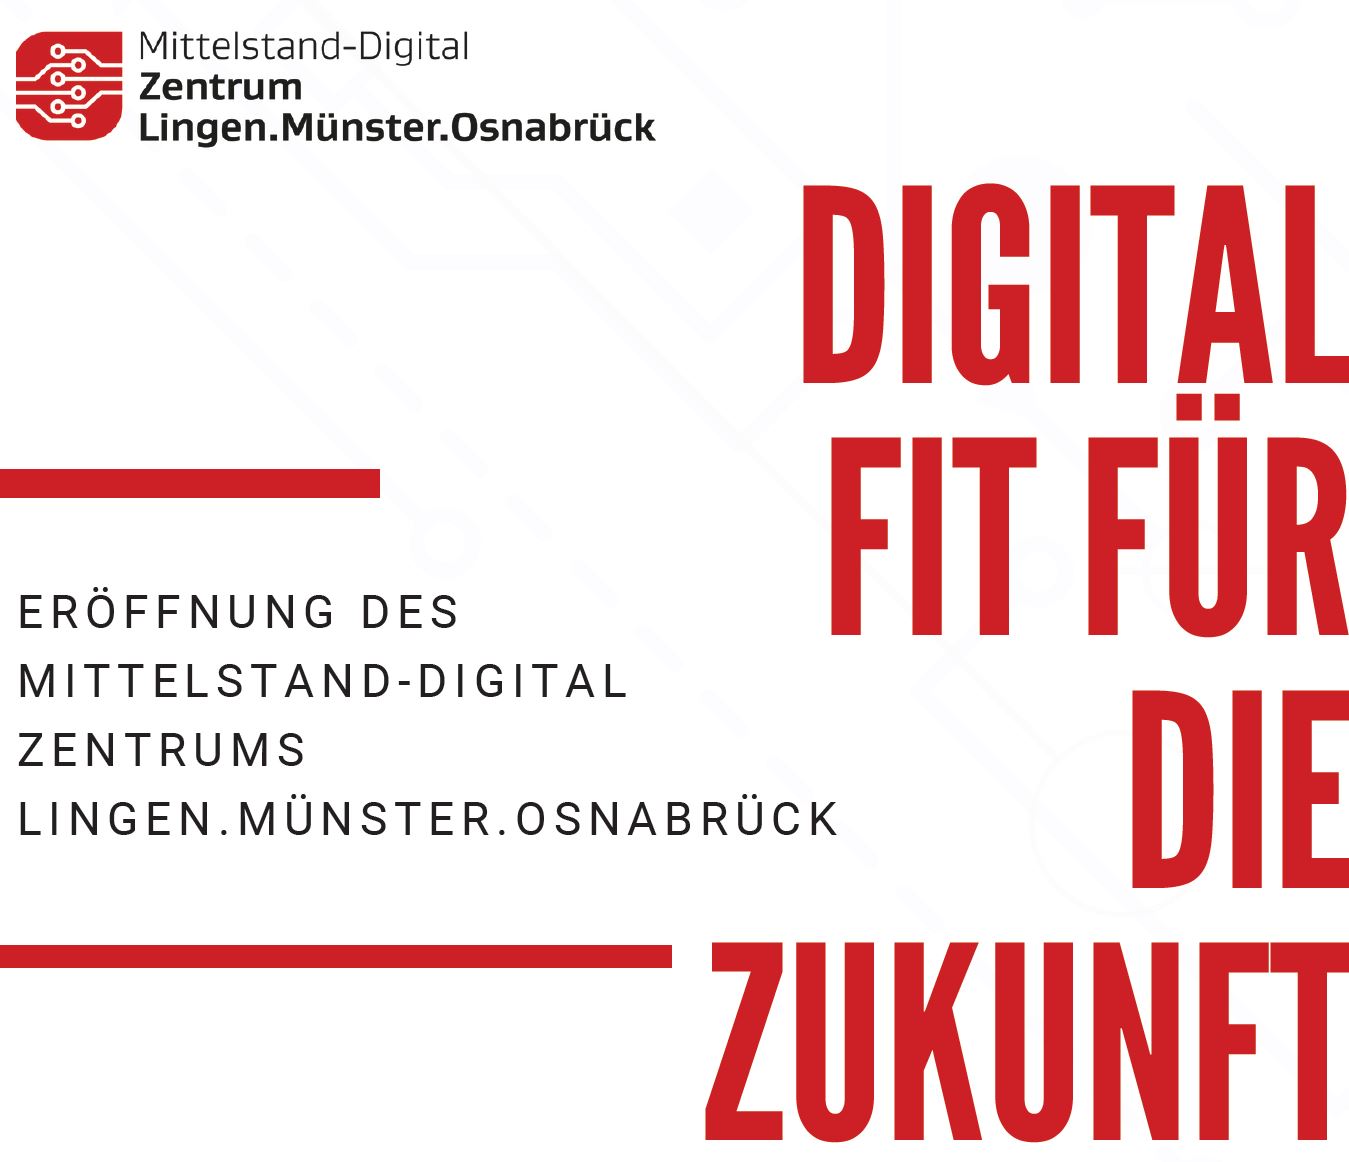 Eröffnung Mittelstand-Digital Zentrum Lingen.Münster.Osnabrück